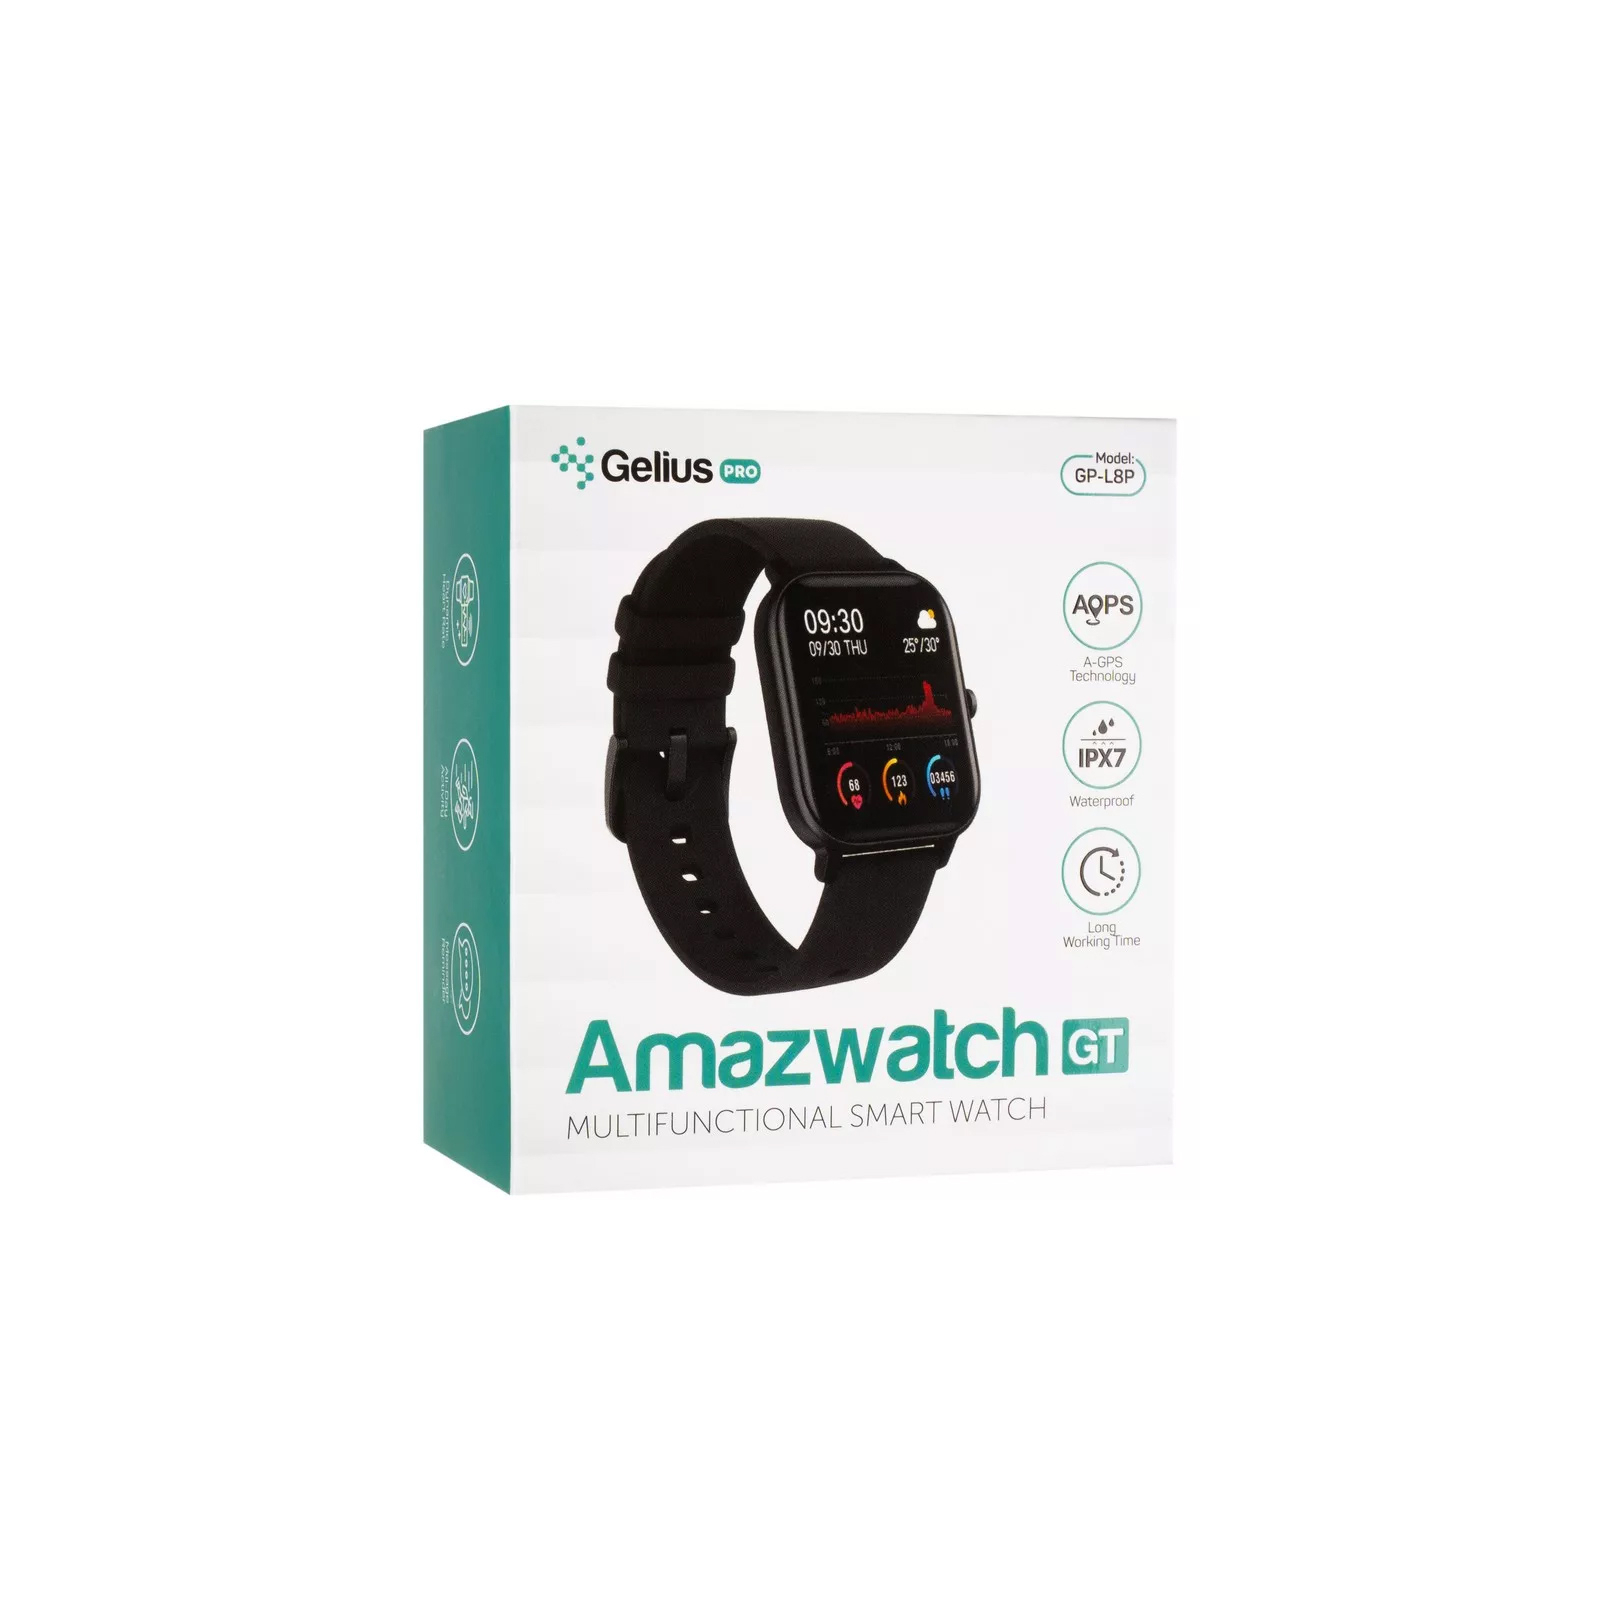 Смарт-часы Gelius Pro (AMAZWATCH GT) (IPX7) Black (AMAZWATCH GT Black) изображение 10